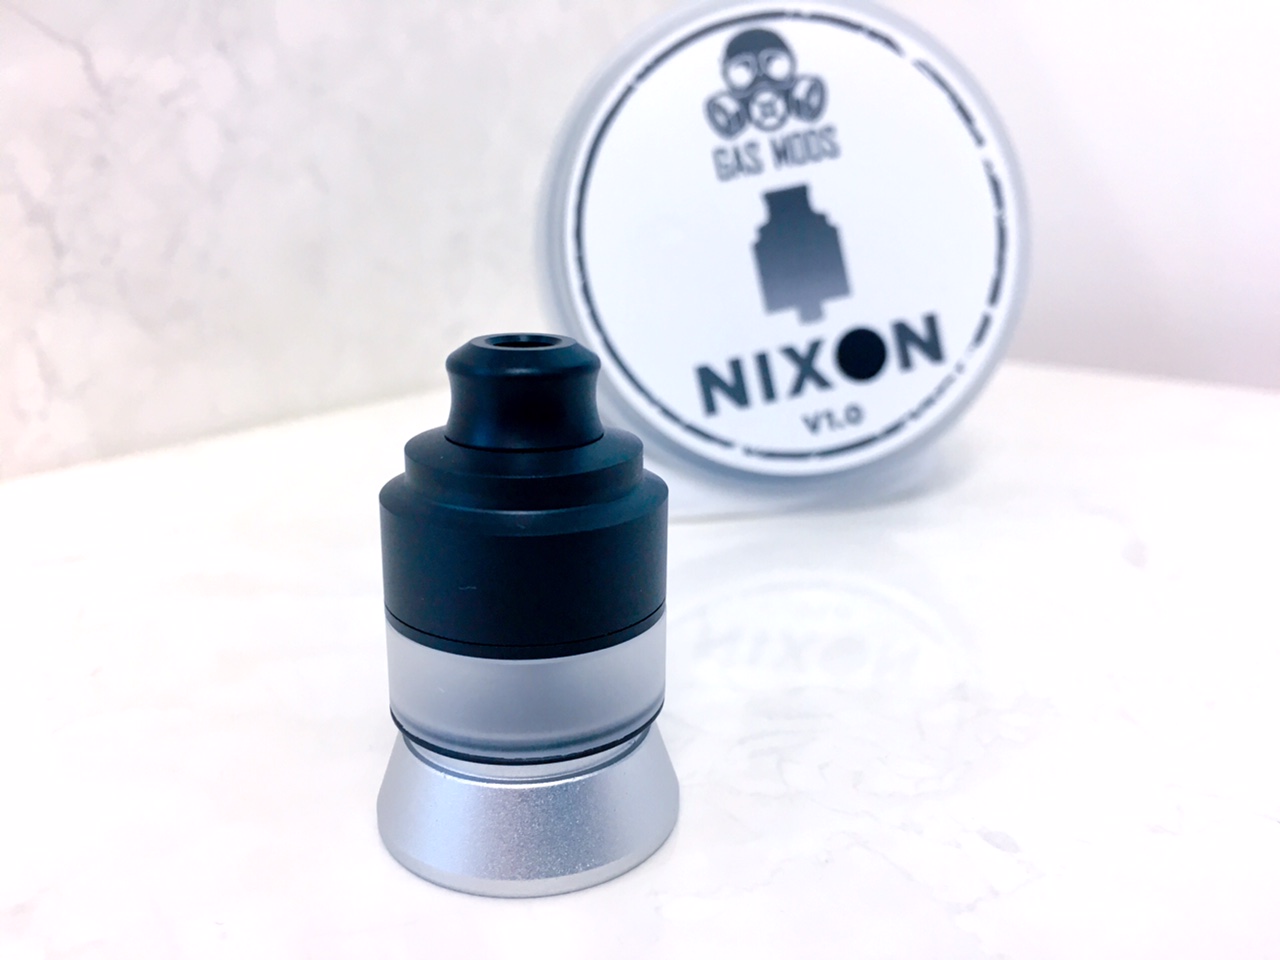 NIXON RDTA V1.0